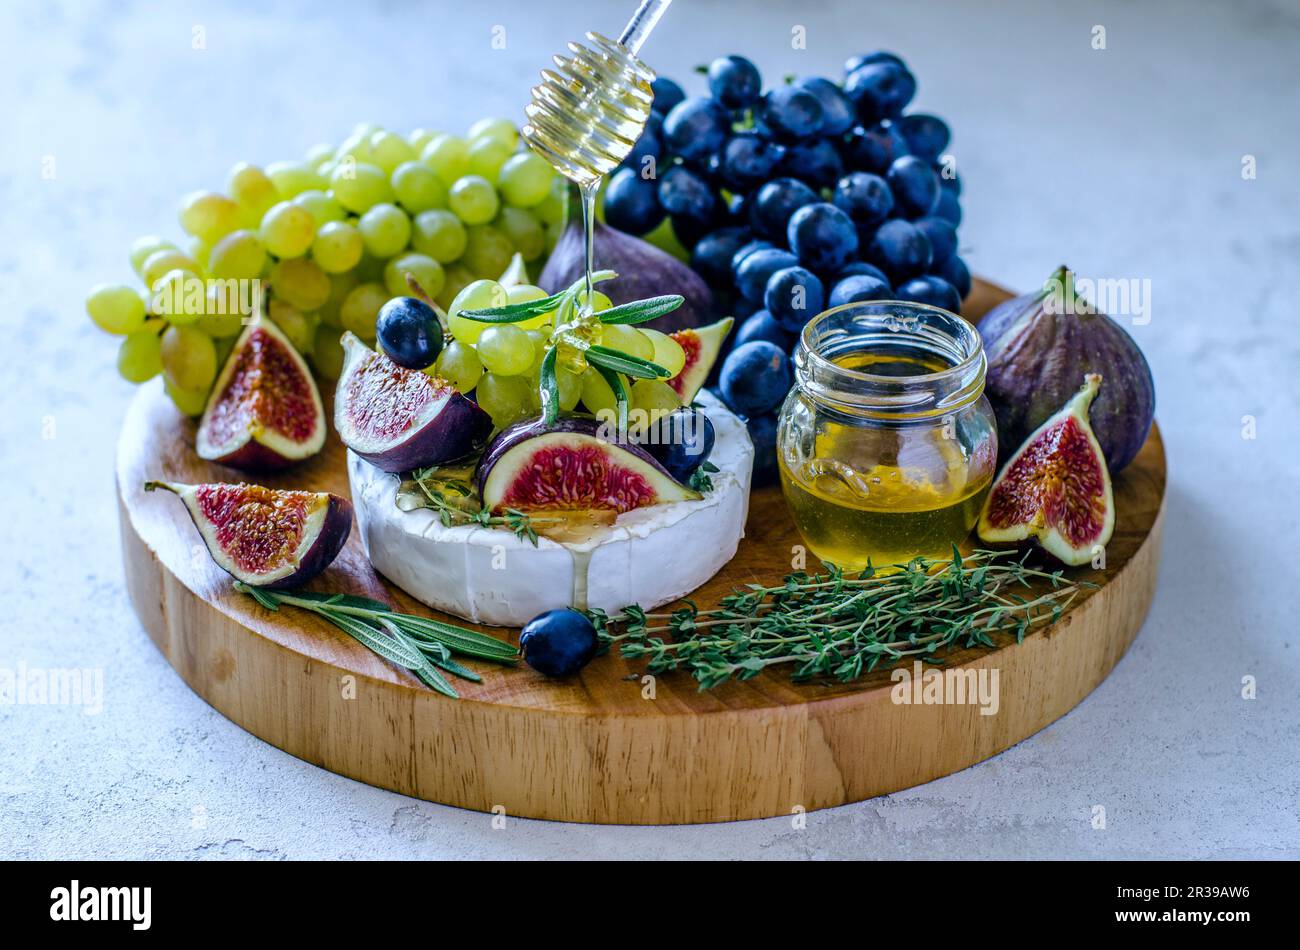 Formaggio Camembert con fichi, miele, uva ed erbe aromatiche su un tagliere Foto Stock